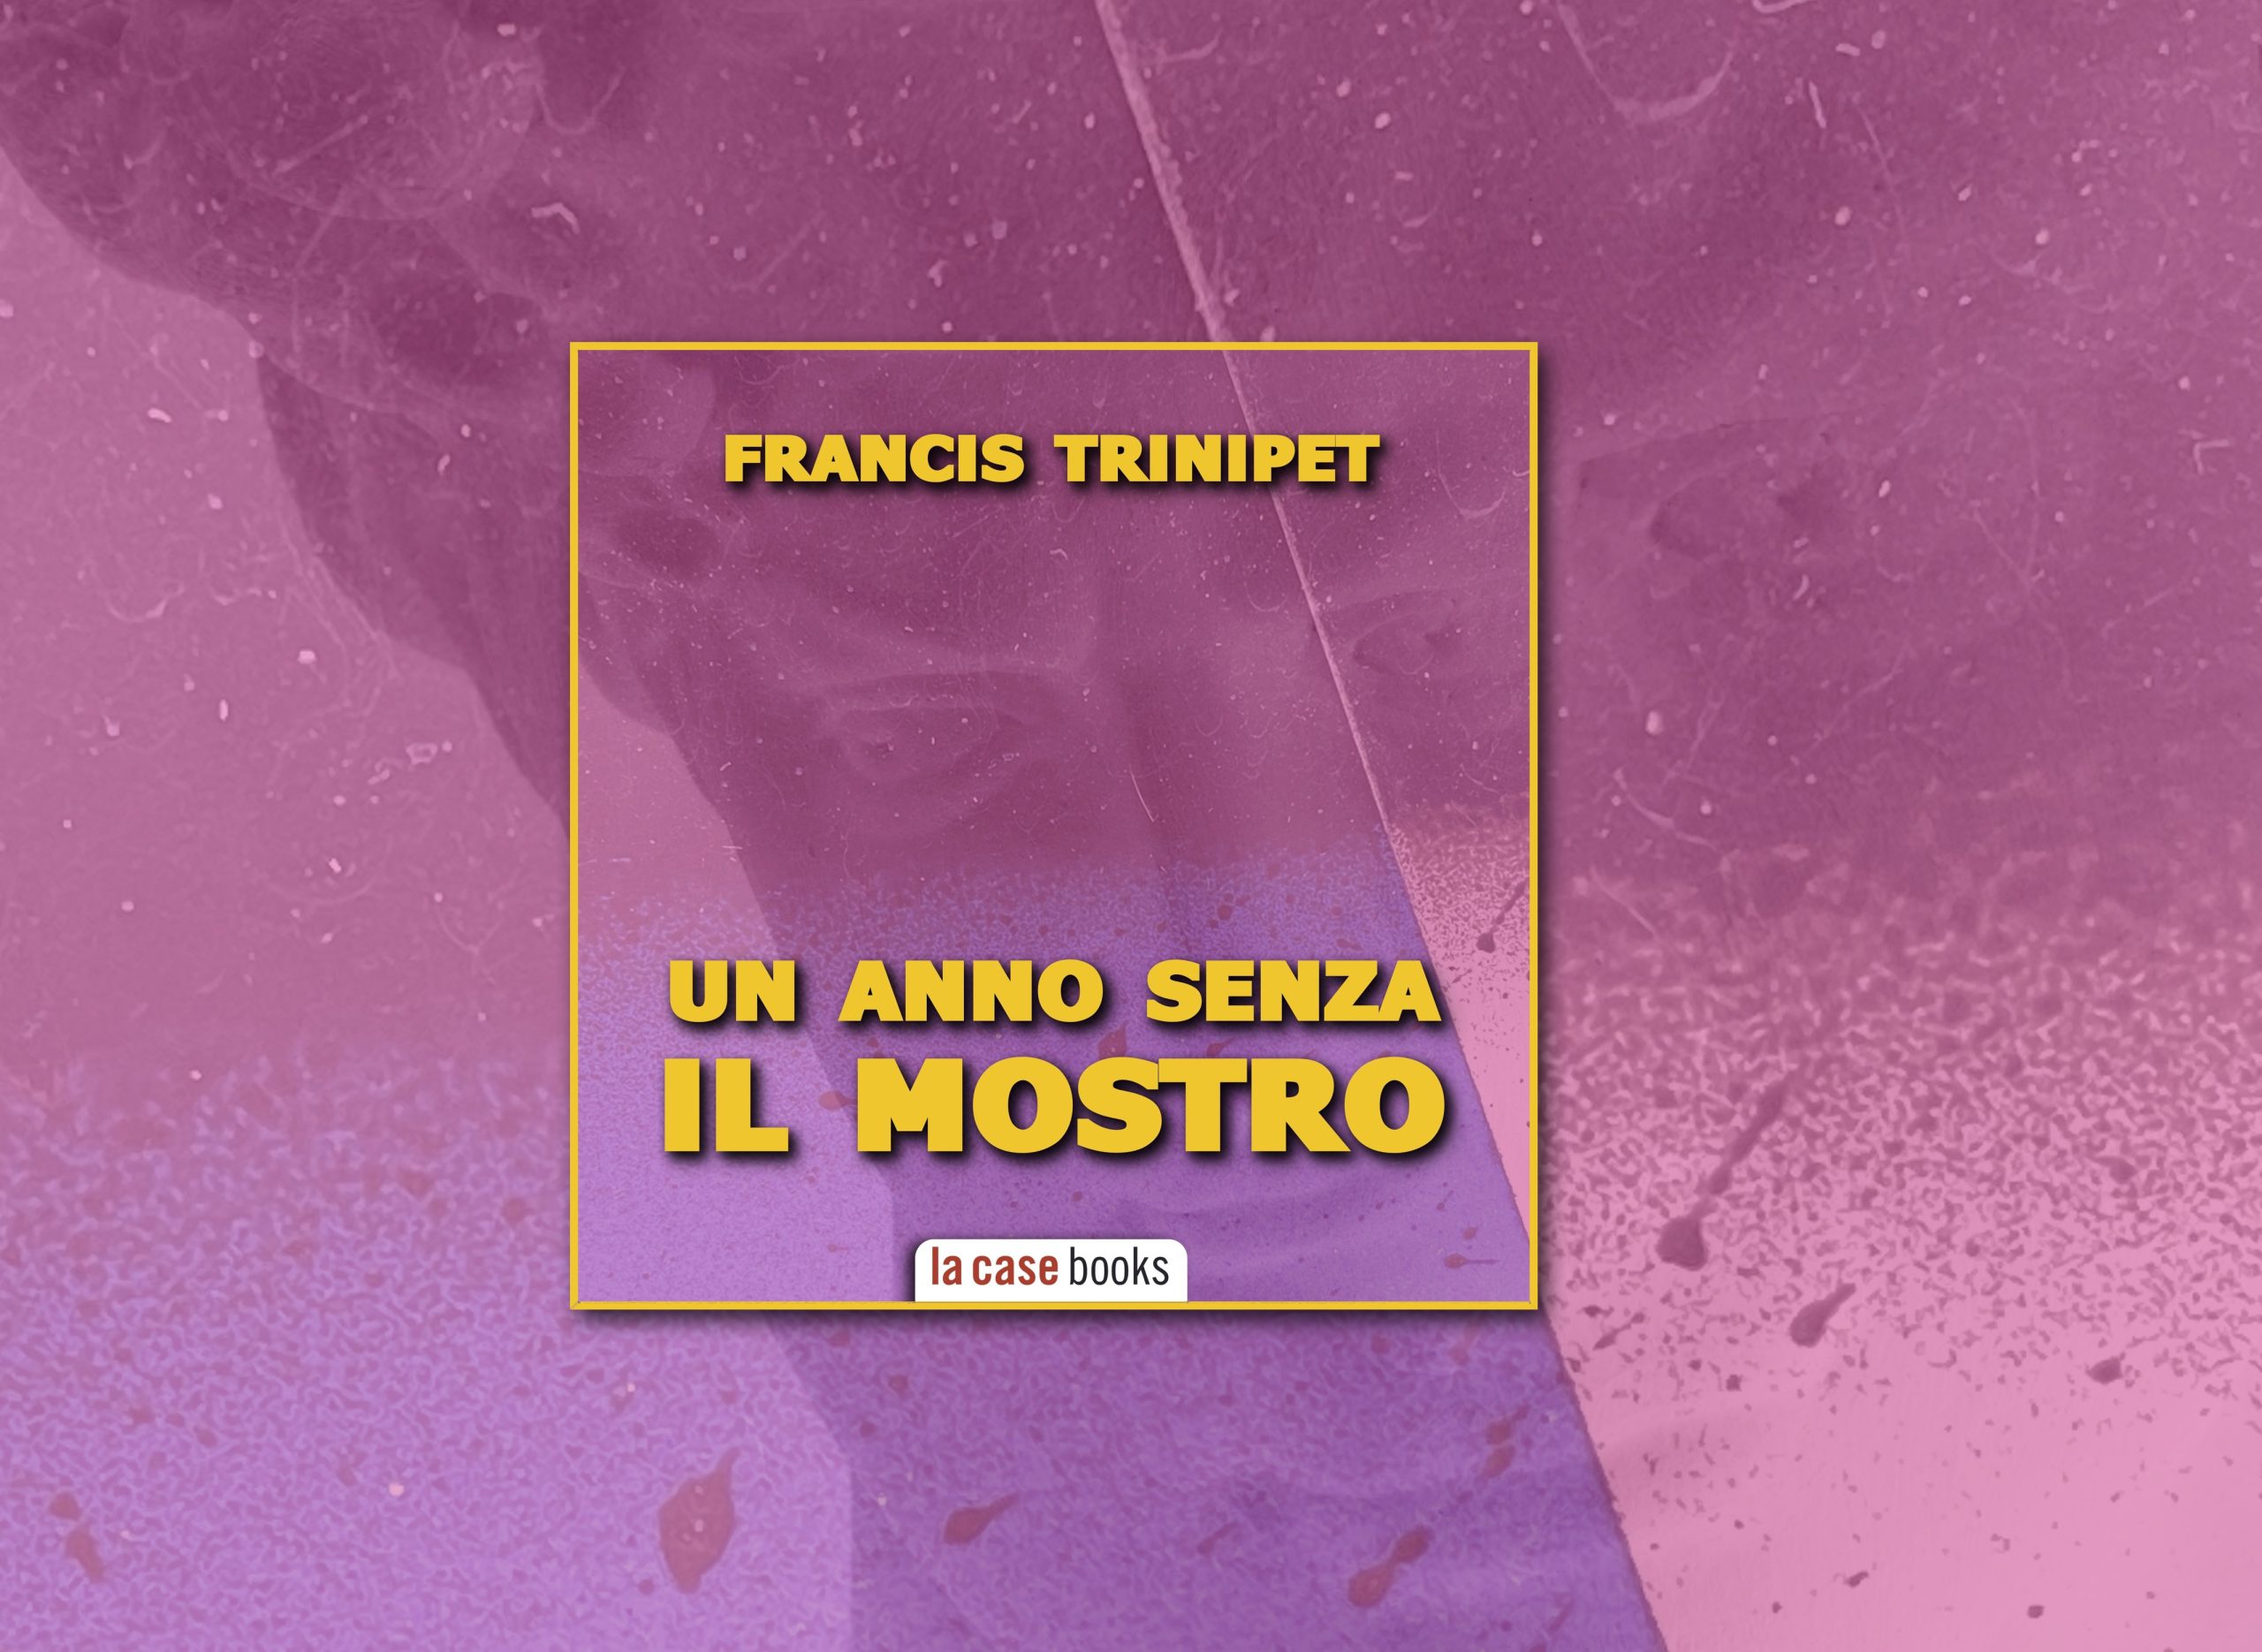 Francis Trinipet analizza il più lungo periodo di cooling-off del Mostro di Firenze negli anni ’80, raccontando non solo le indagini, ma anche la società fiorentina di quegli anni.